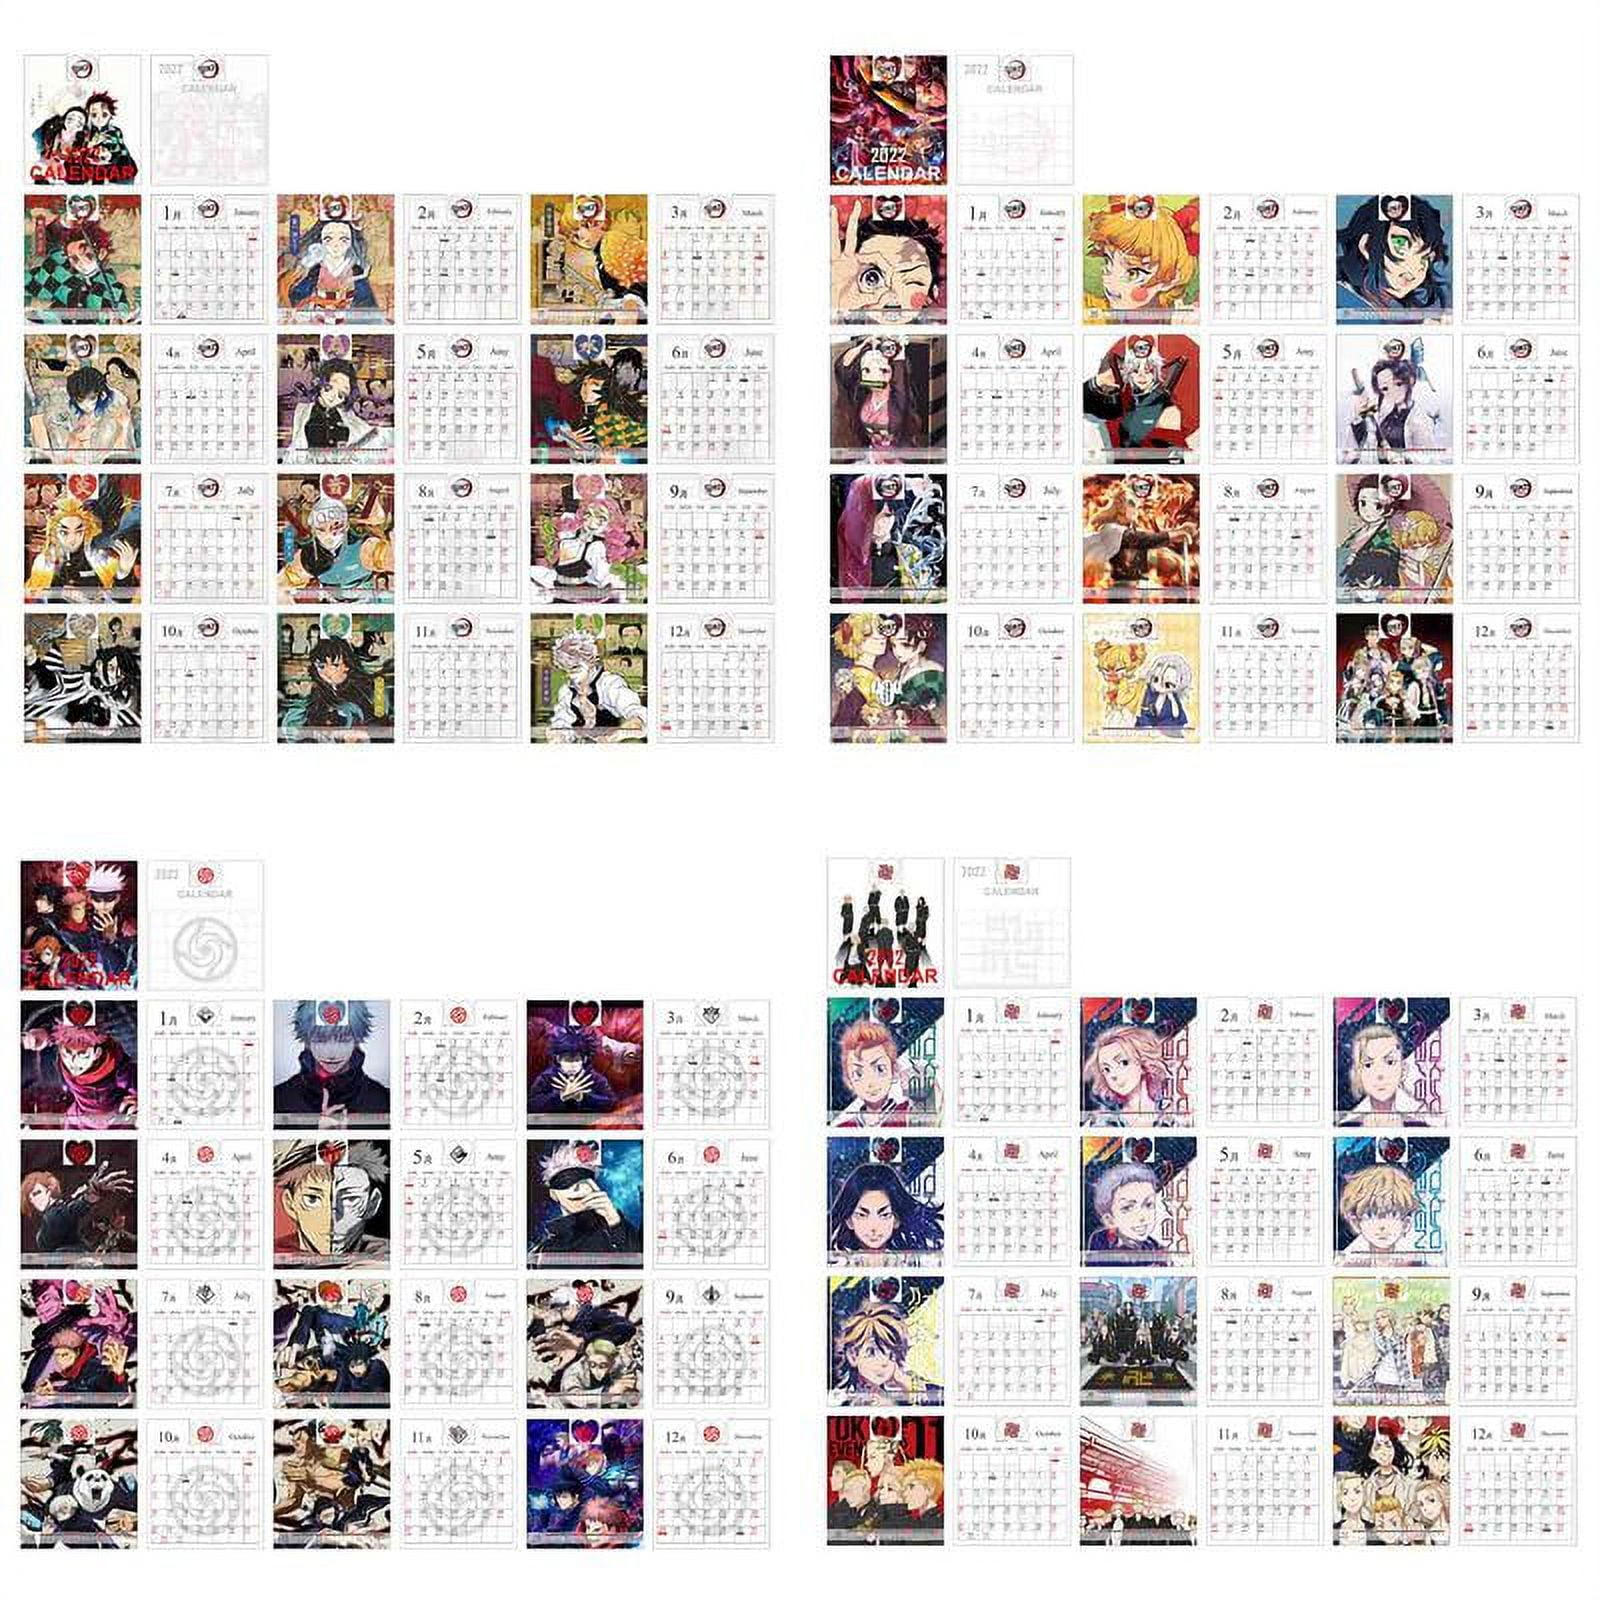  Bleạch 2022 Calendar: OFFICIAL 2022 Calendar - Anime Manga  Calendar 2022-2023, Calendar Planner - Kalendar calendario calendrier 18  monthly (Anime  Supplies) - January 2022 to December 2023.3:  9798414284956: Calendar, Bleach: Books